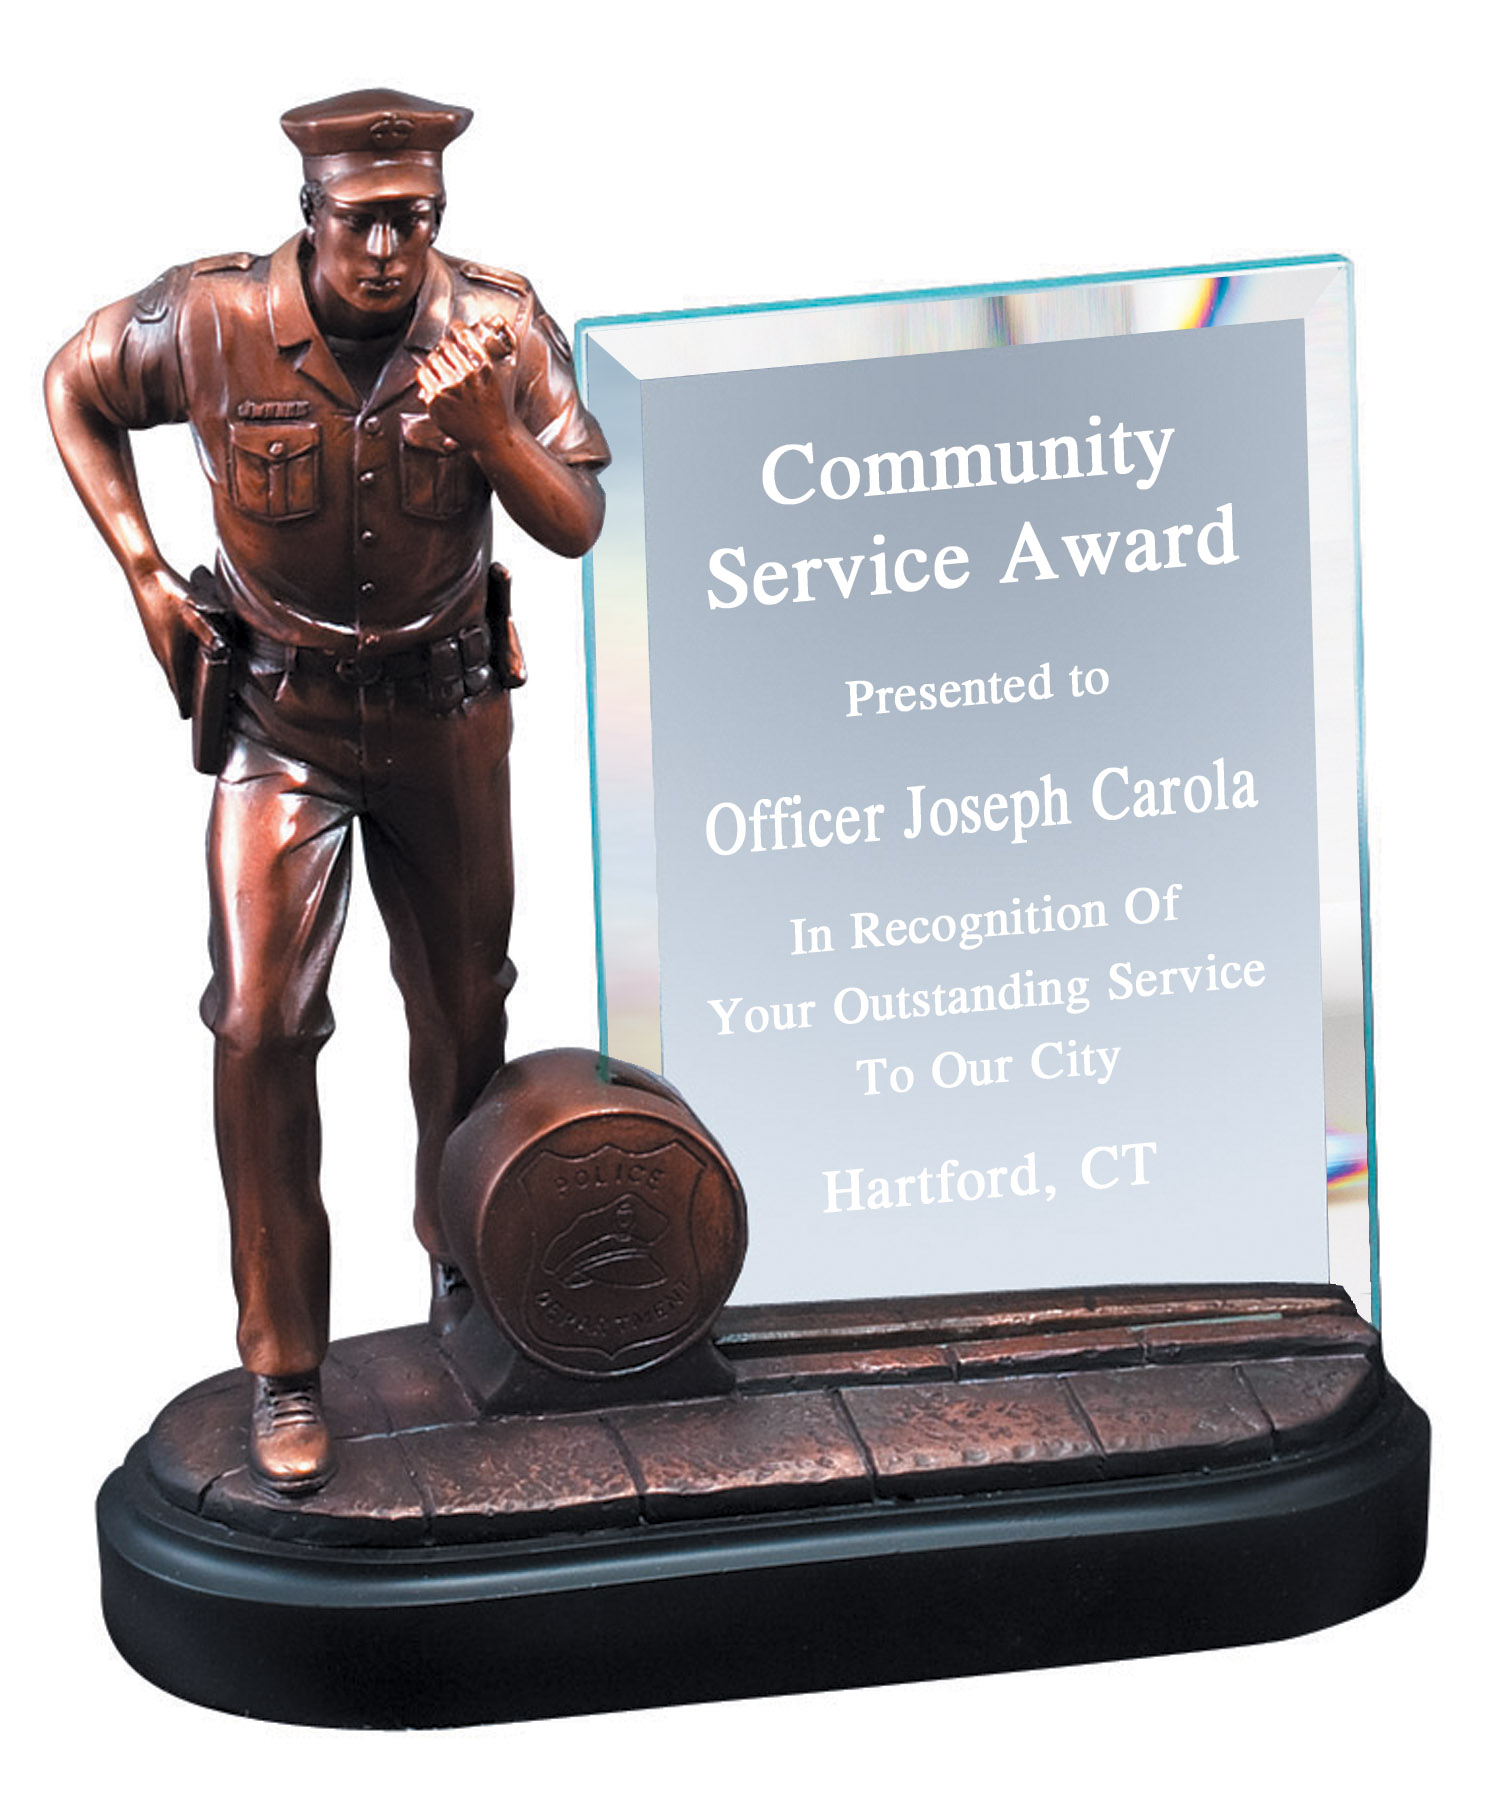 Engravable Law enforcement resin/glass award plaque